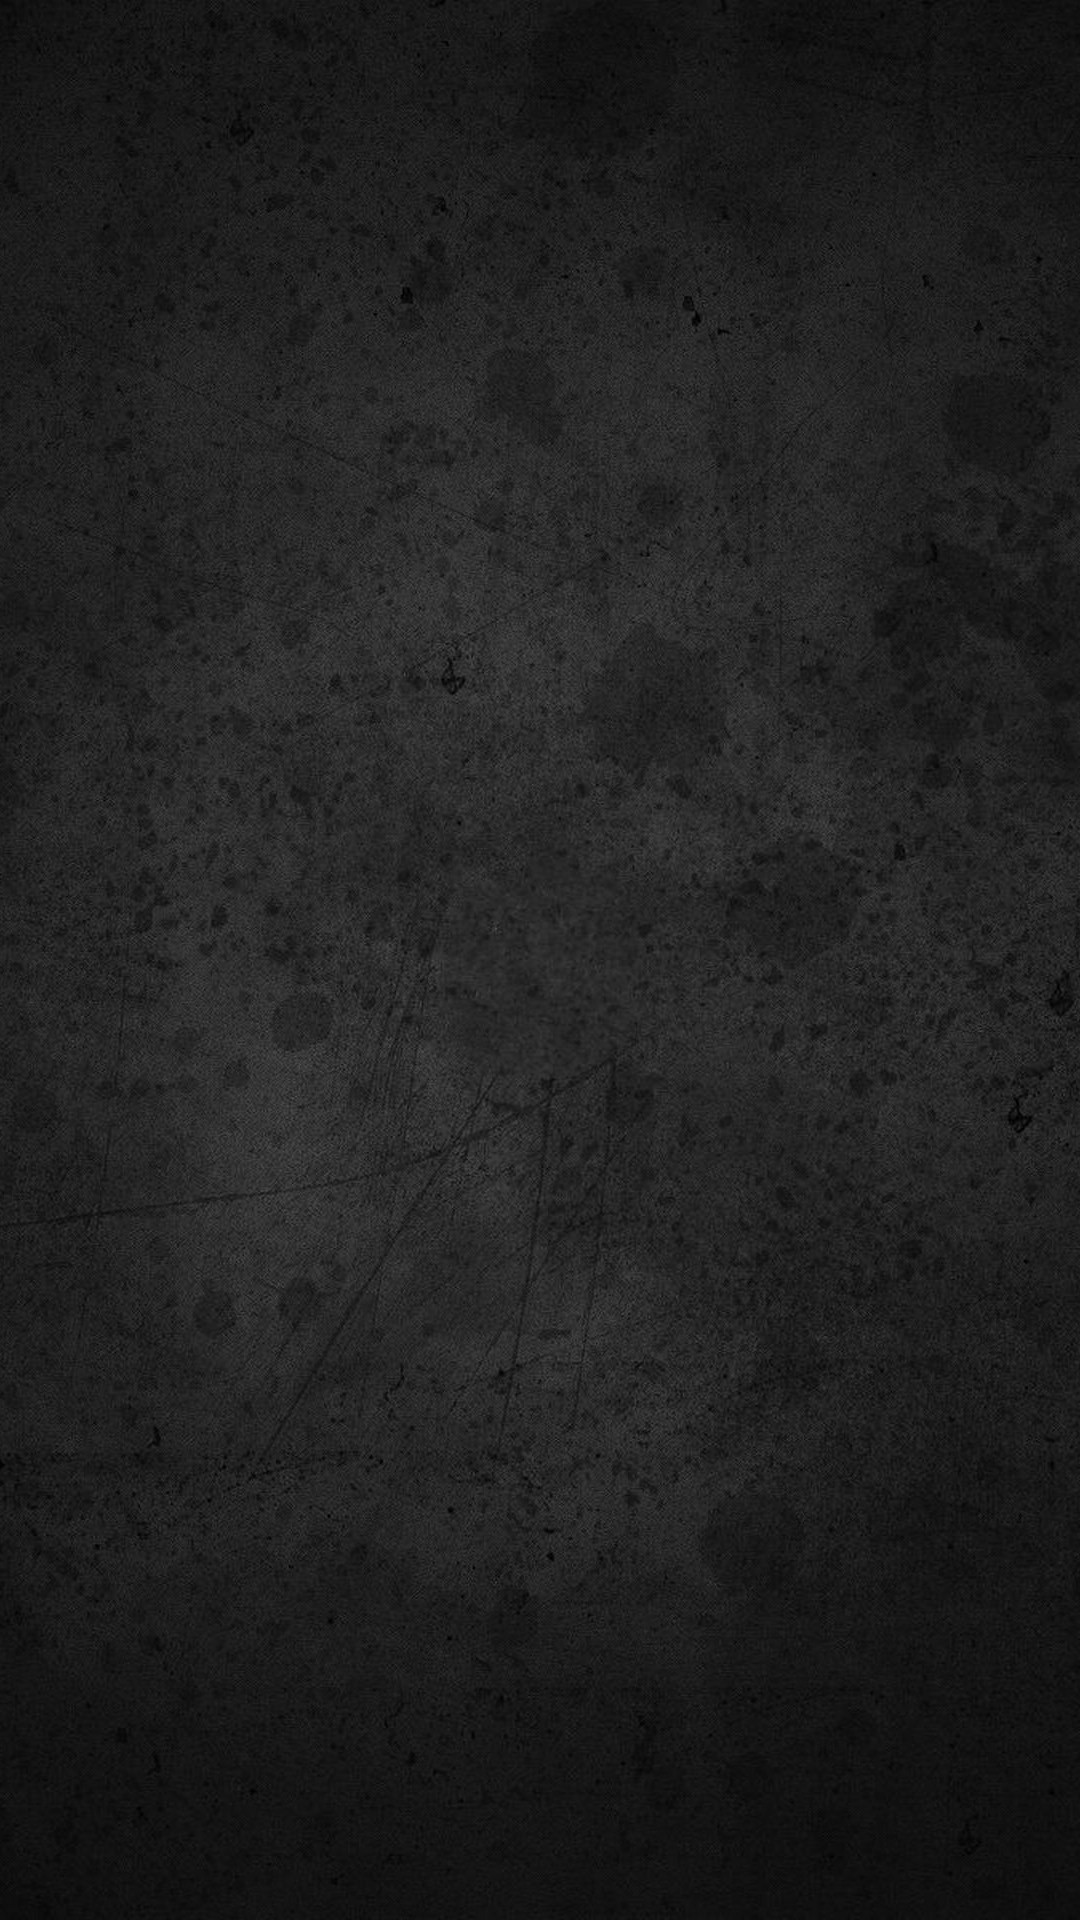 whatsapp wallpaper hd,schwarz,dunkelheit,braun,himmel,grau